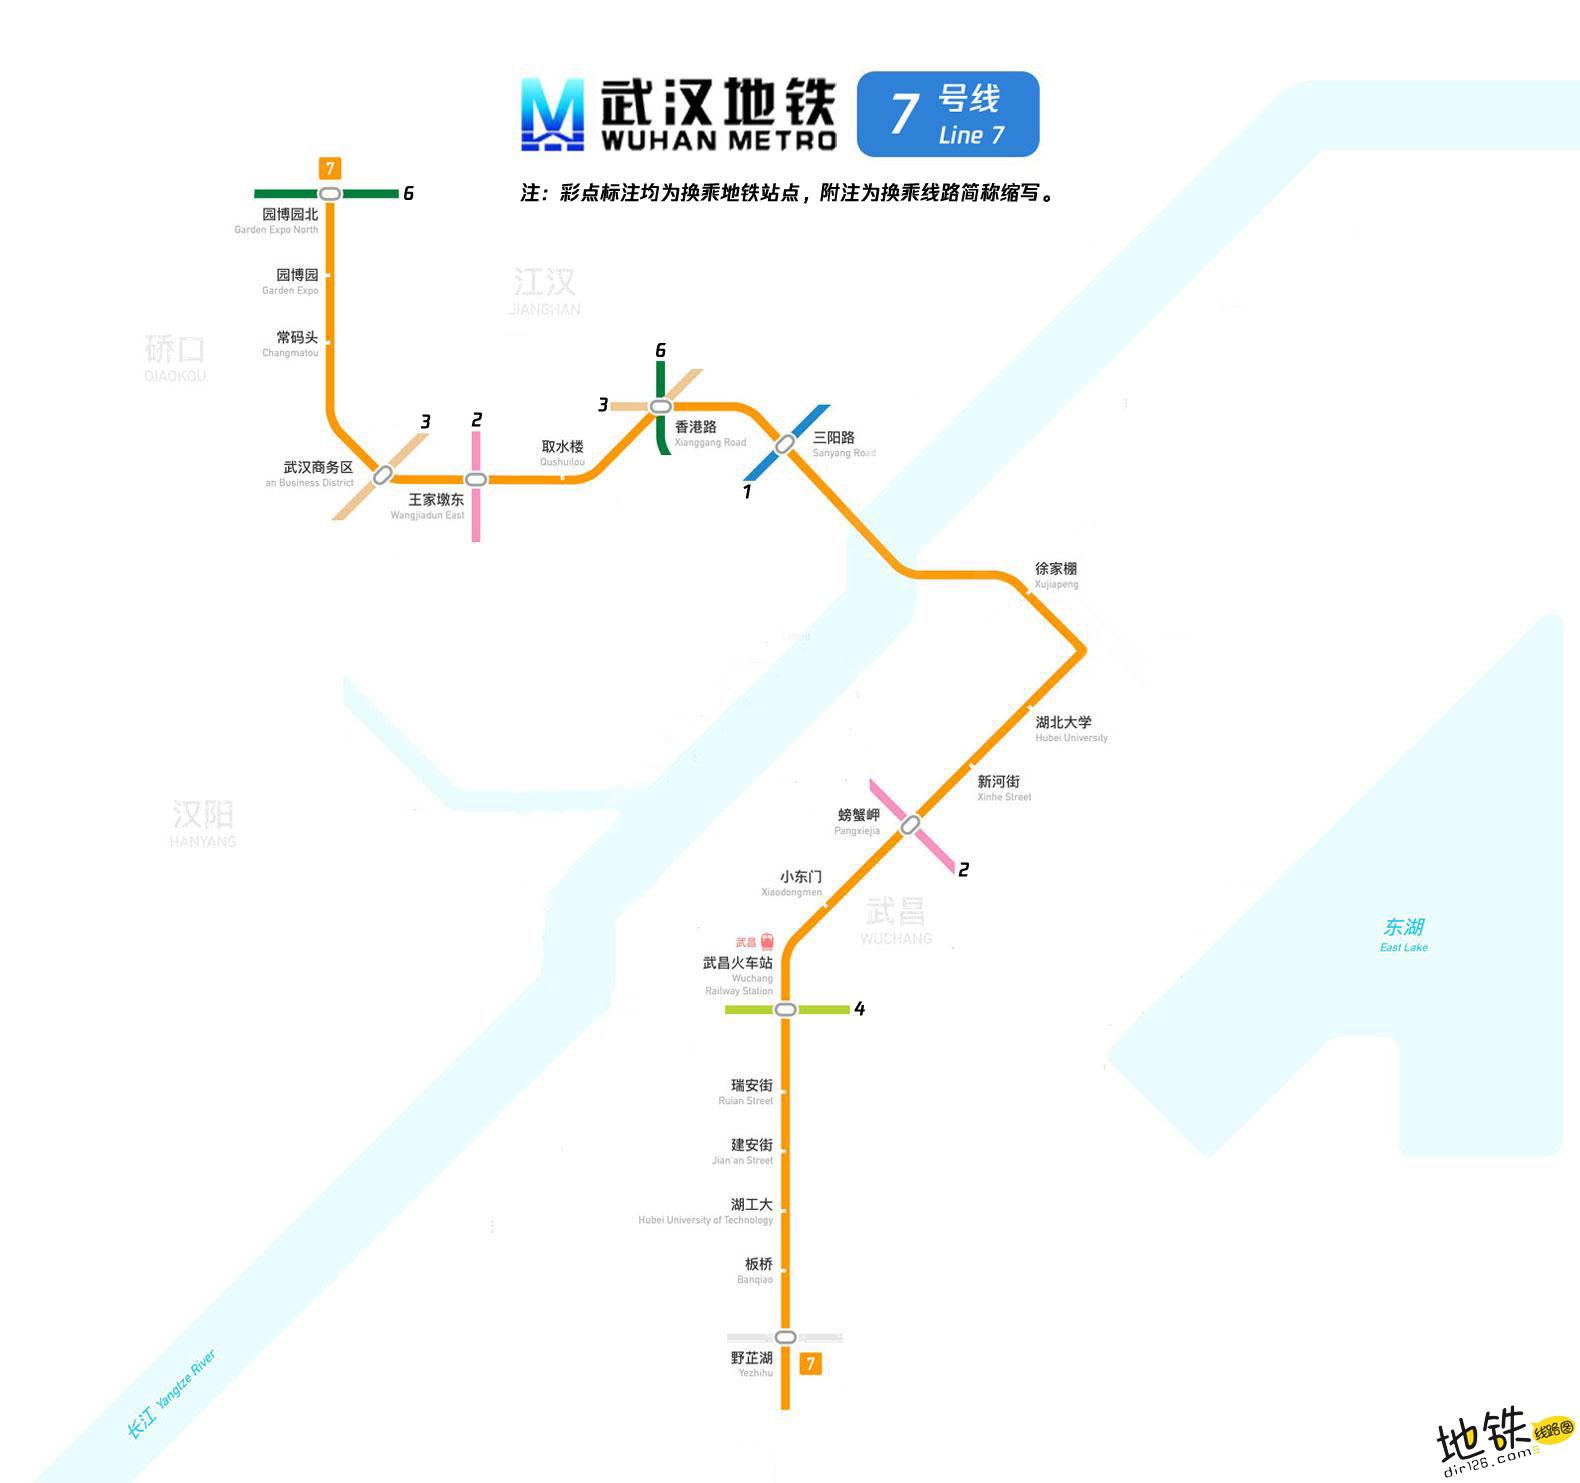 武汉地铁7号线线路图 武汉地铁7号线 武汉地铁七号线 武汉地铁线路图